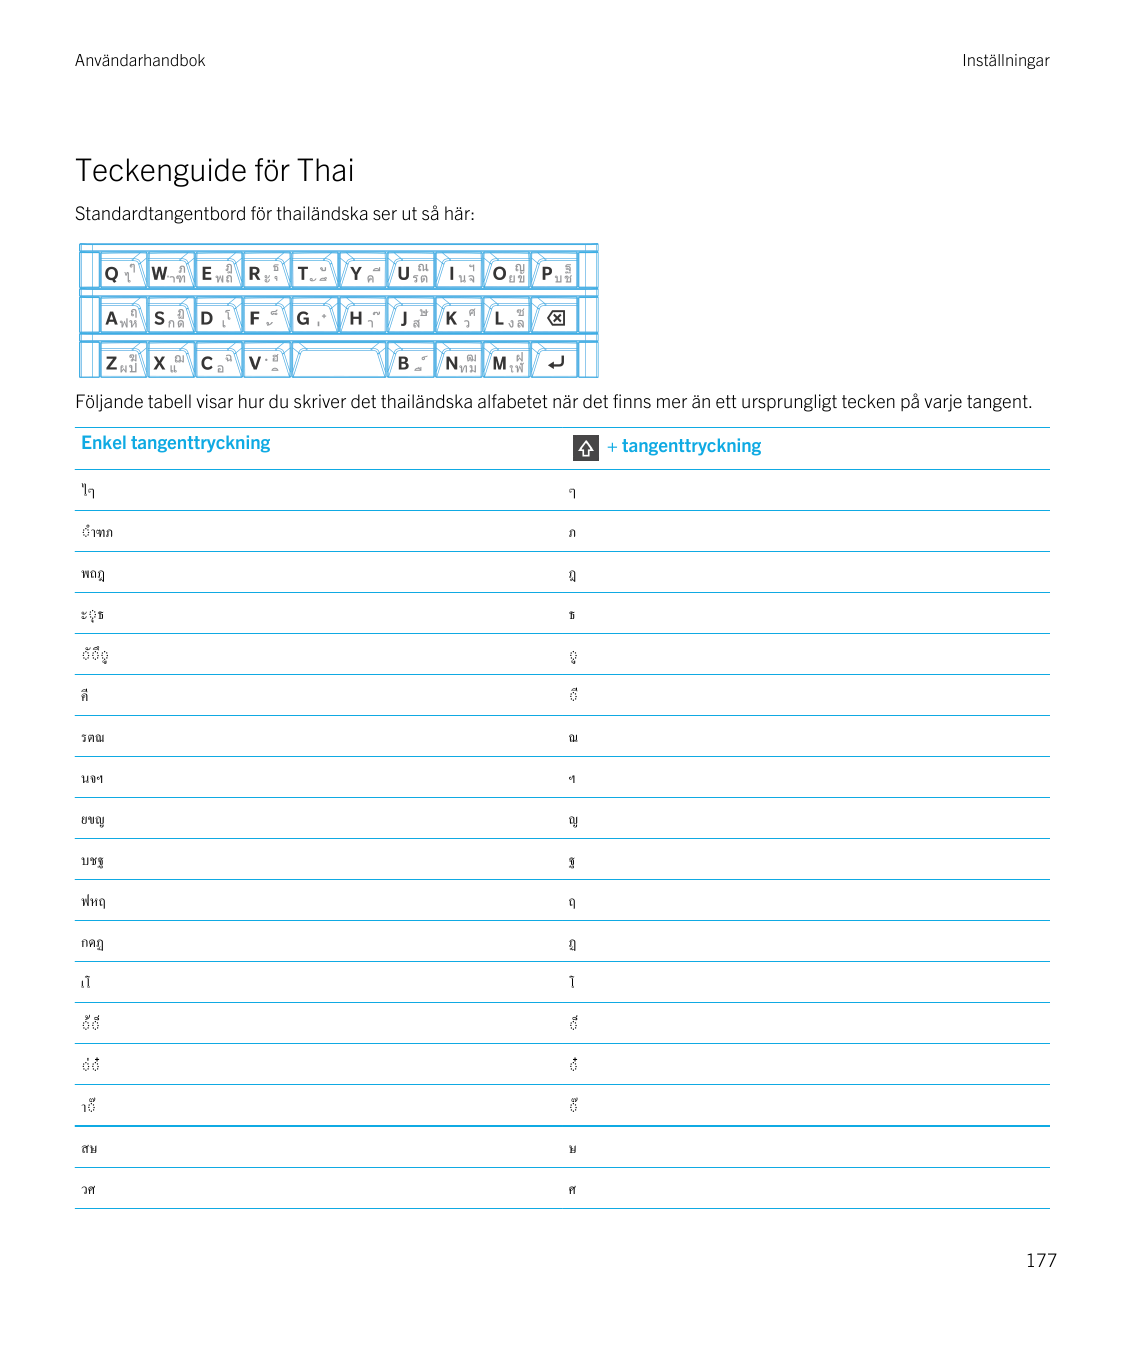 AnvändarhandbokInställningarTeckenguide för ThaiStandardtangentbord för thailändska ser ut så här:Följande tabell visar hur du s